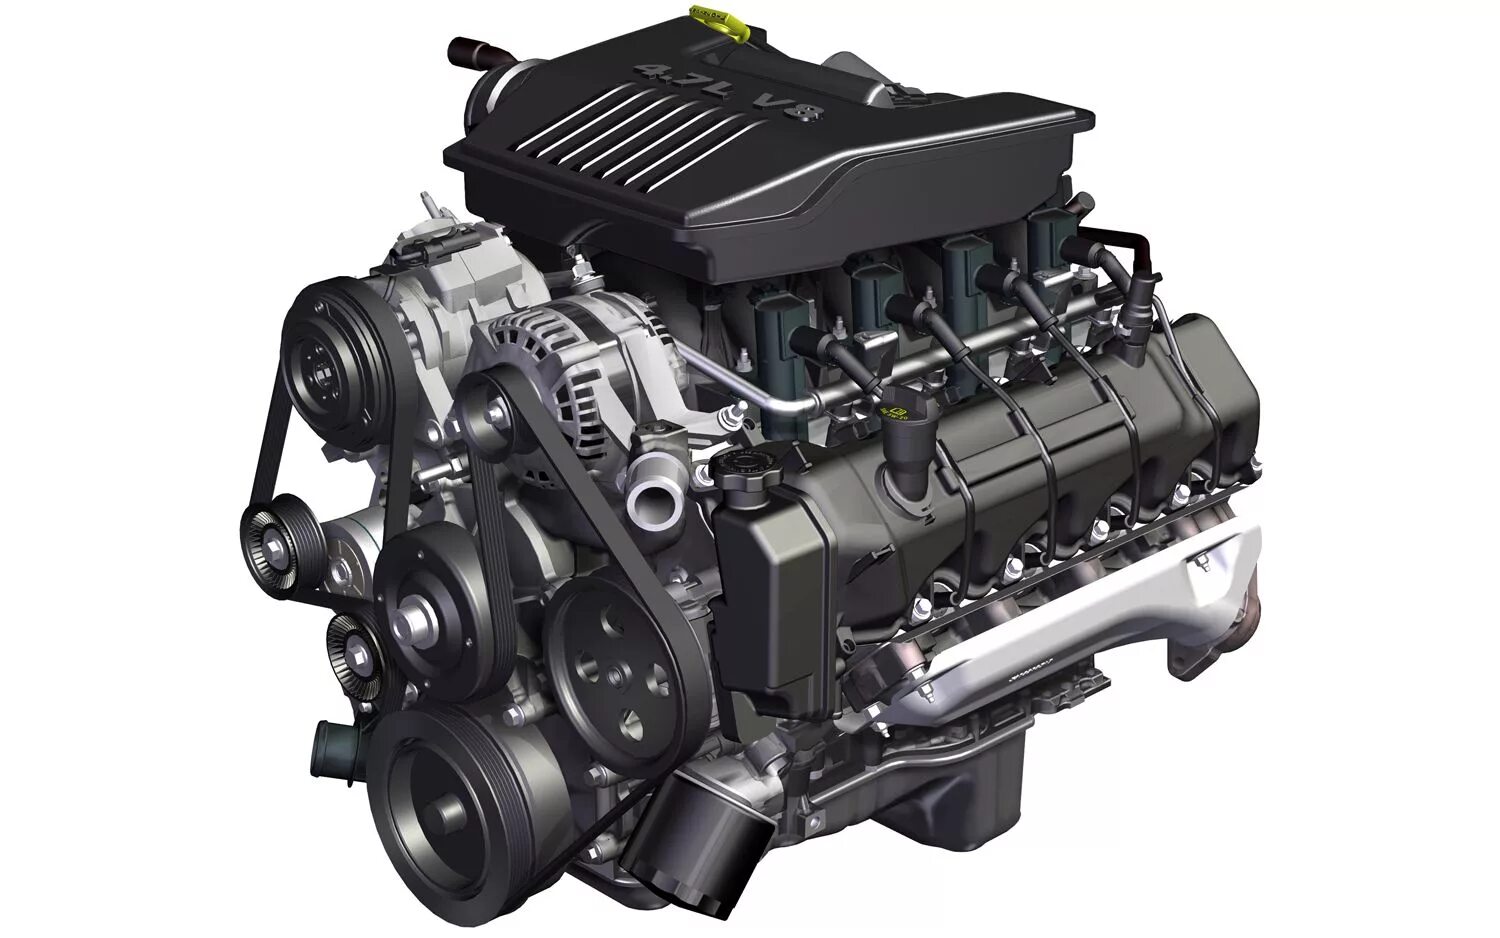 Сайт про моторы. Двигатель v8. POWERTECH 4,7 Jeep v8. Движок v8. Двигатель Chrysler v8.